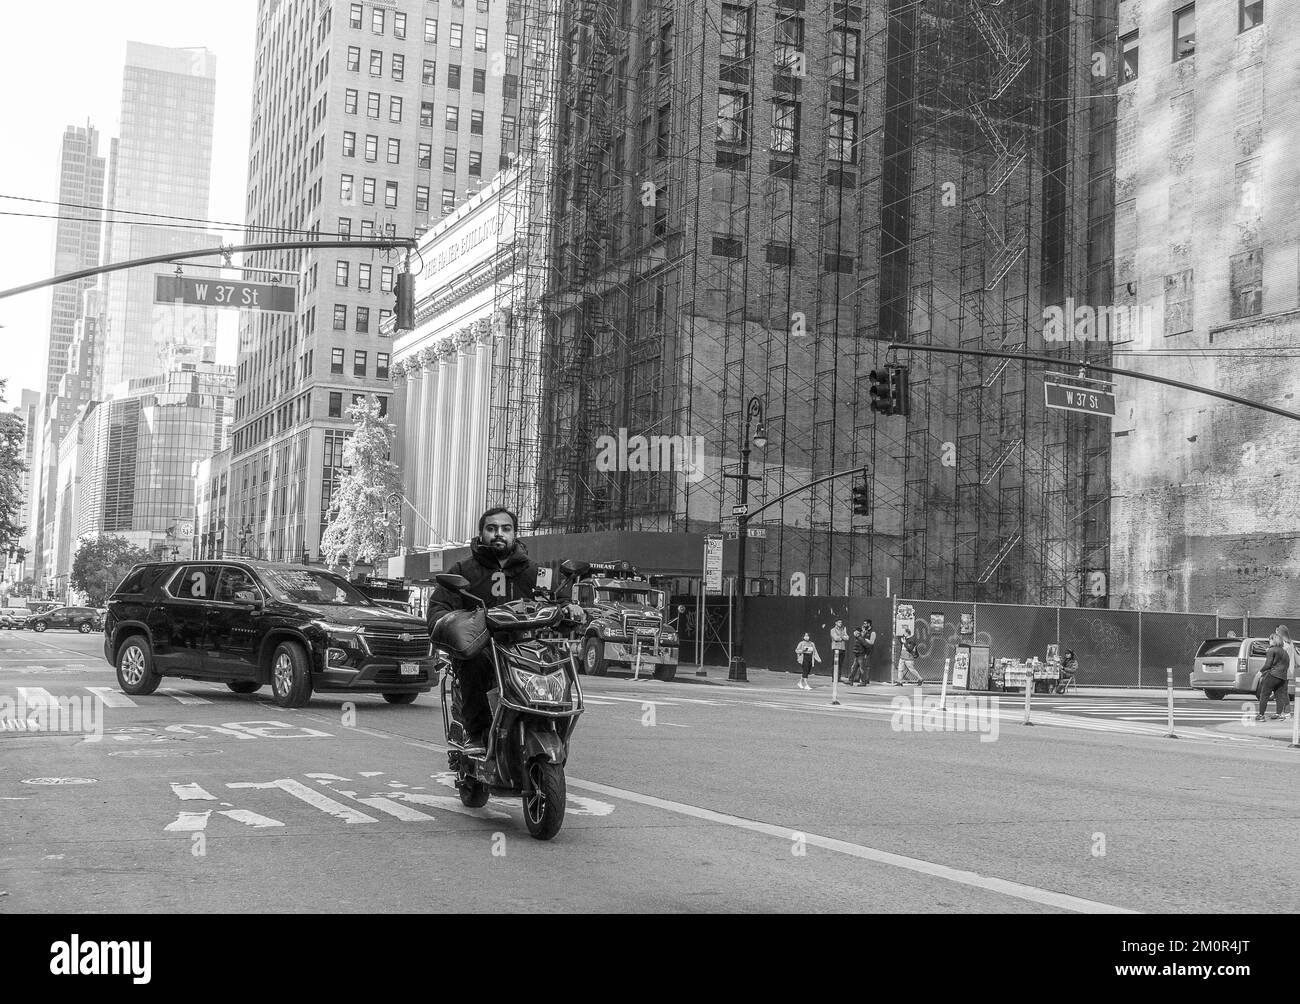 Homme asiatique conduisant son scooter dans les rues de New York avec les gratte-ciel de Manhattan en arrière-plan. Photographie de rue en noir et blanc Banque D'Images